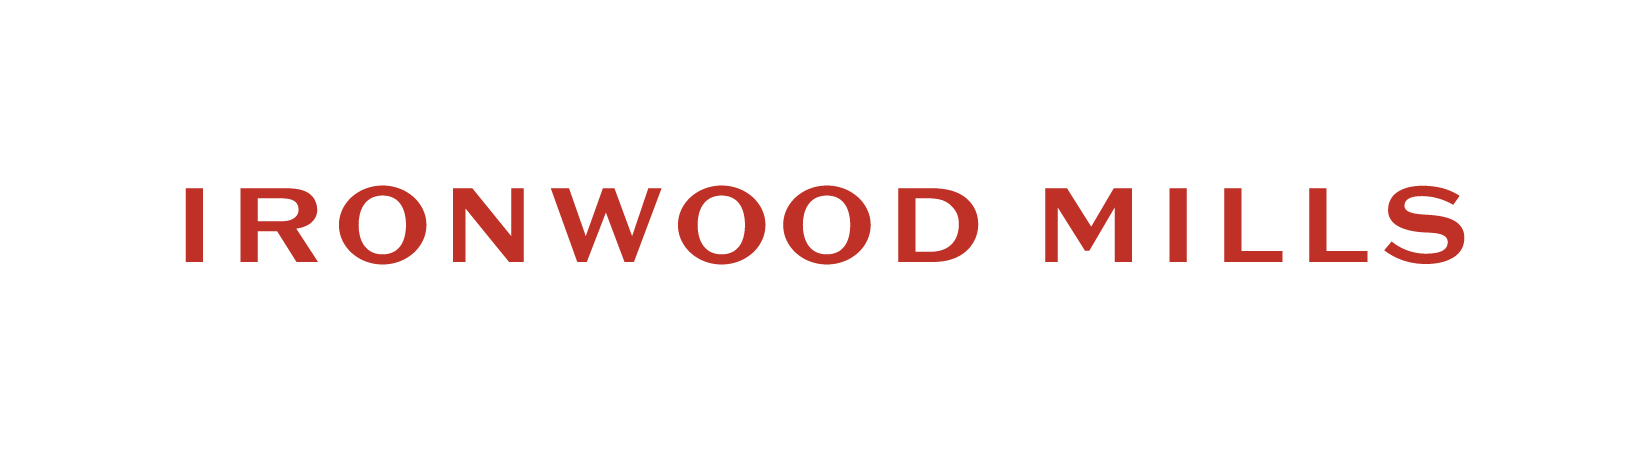 Ironwood Mills Wordmark - Unimog